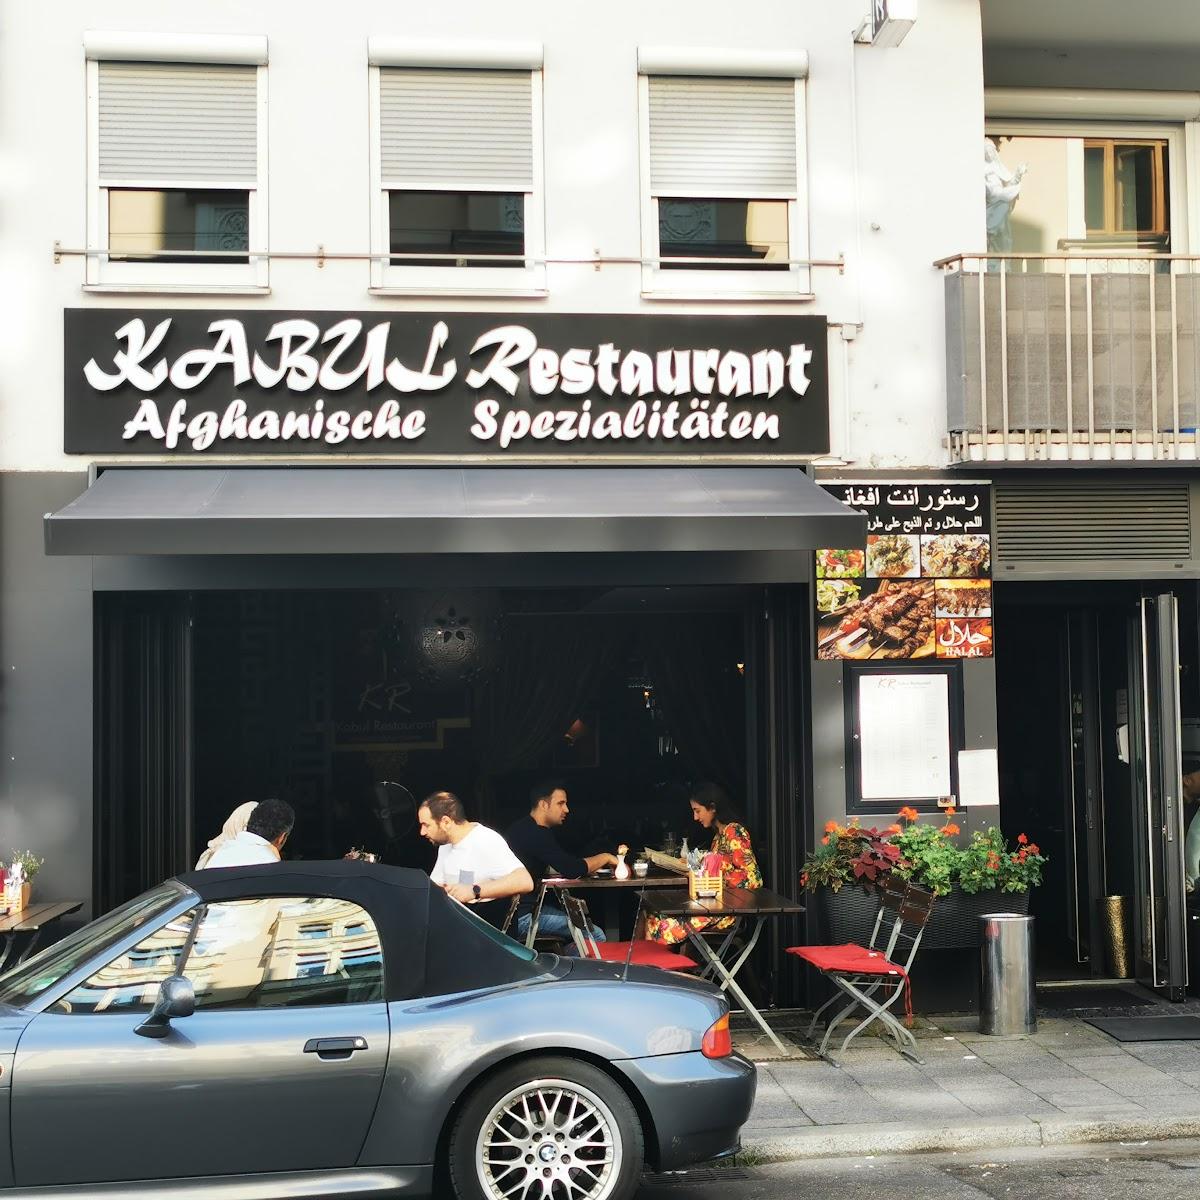 Restaurant "Kabul Restaurant" in München